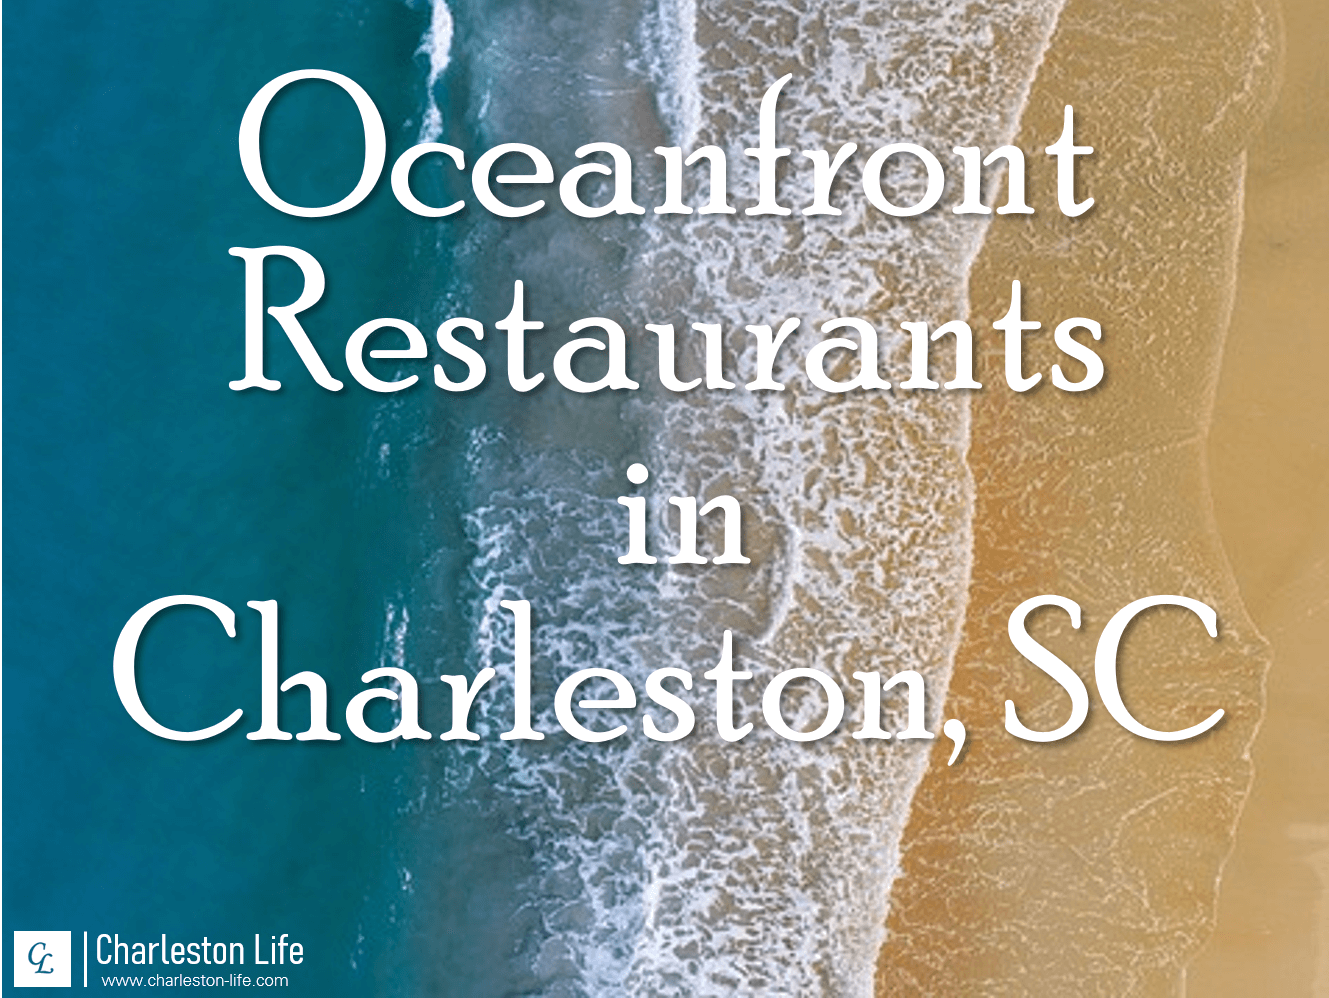 Oceanfront Restaurants in Charleston, SC